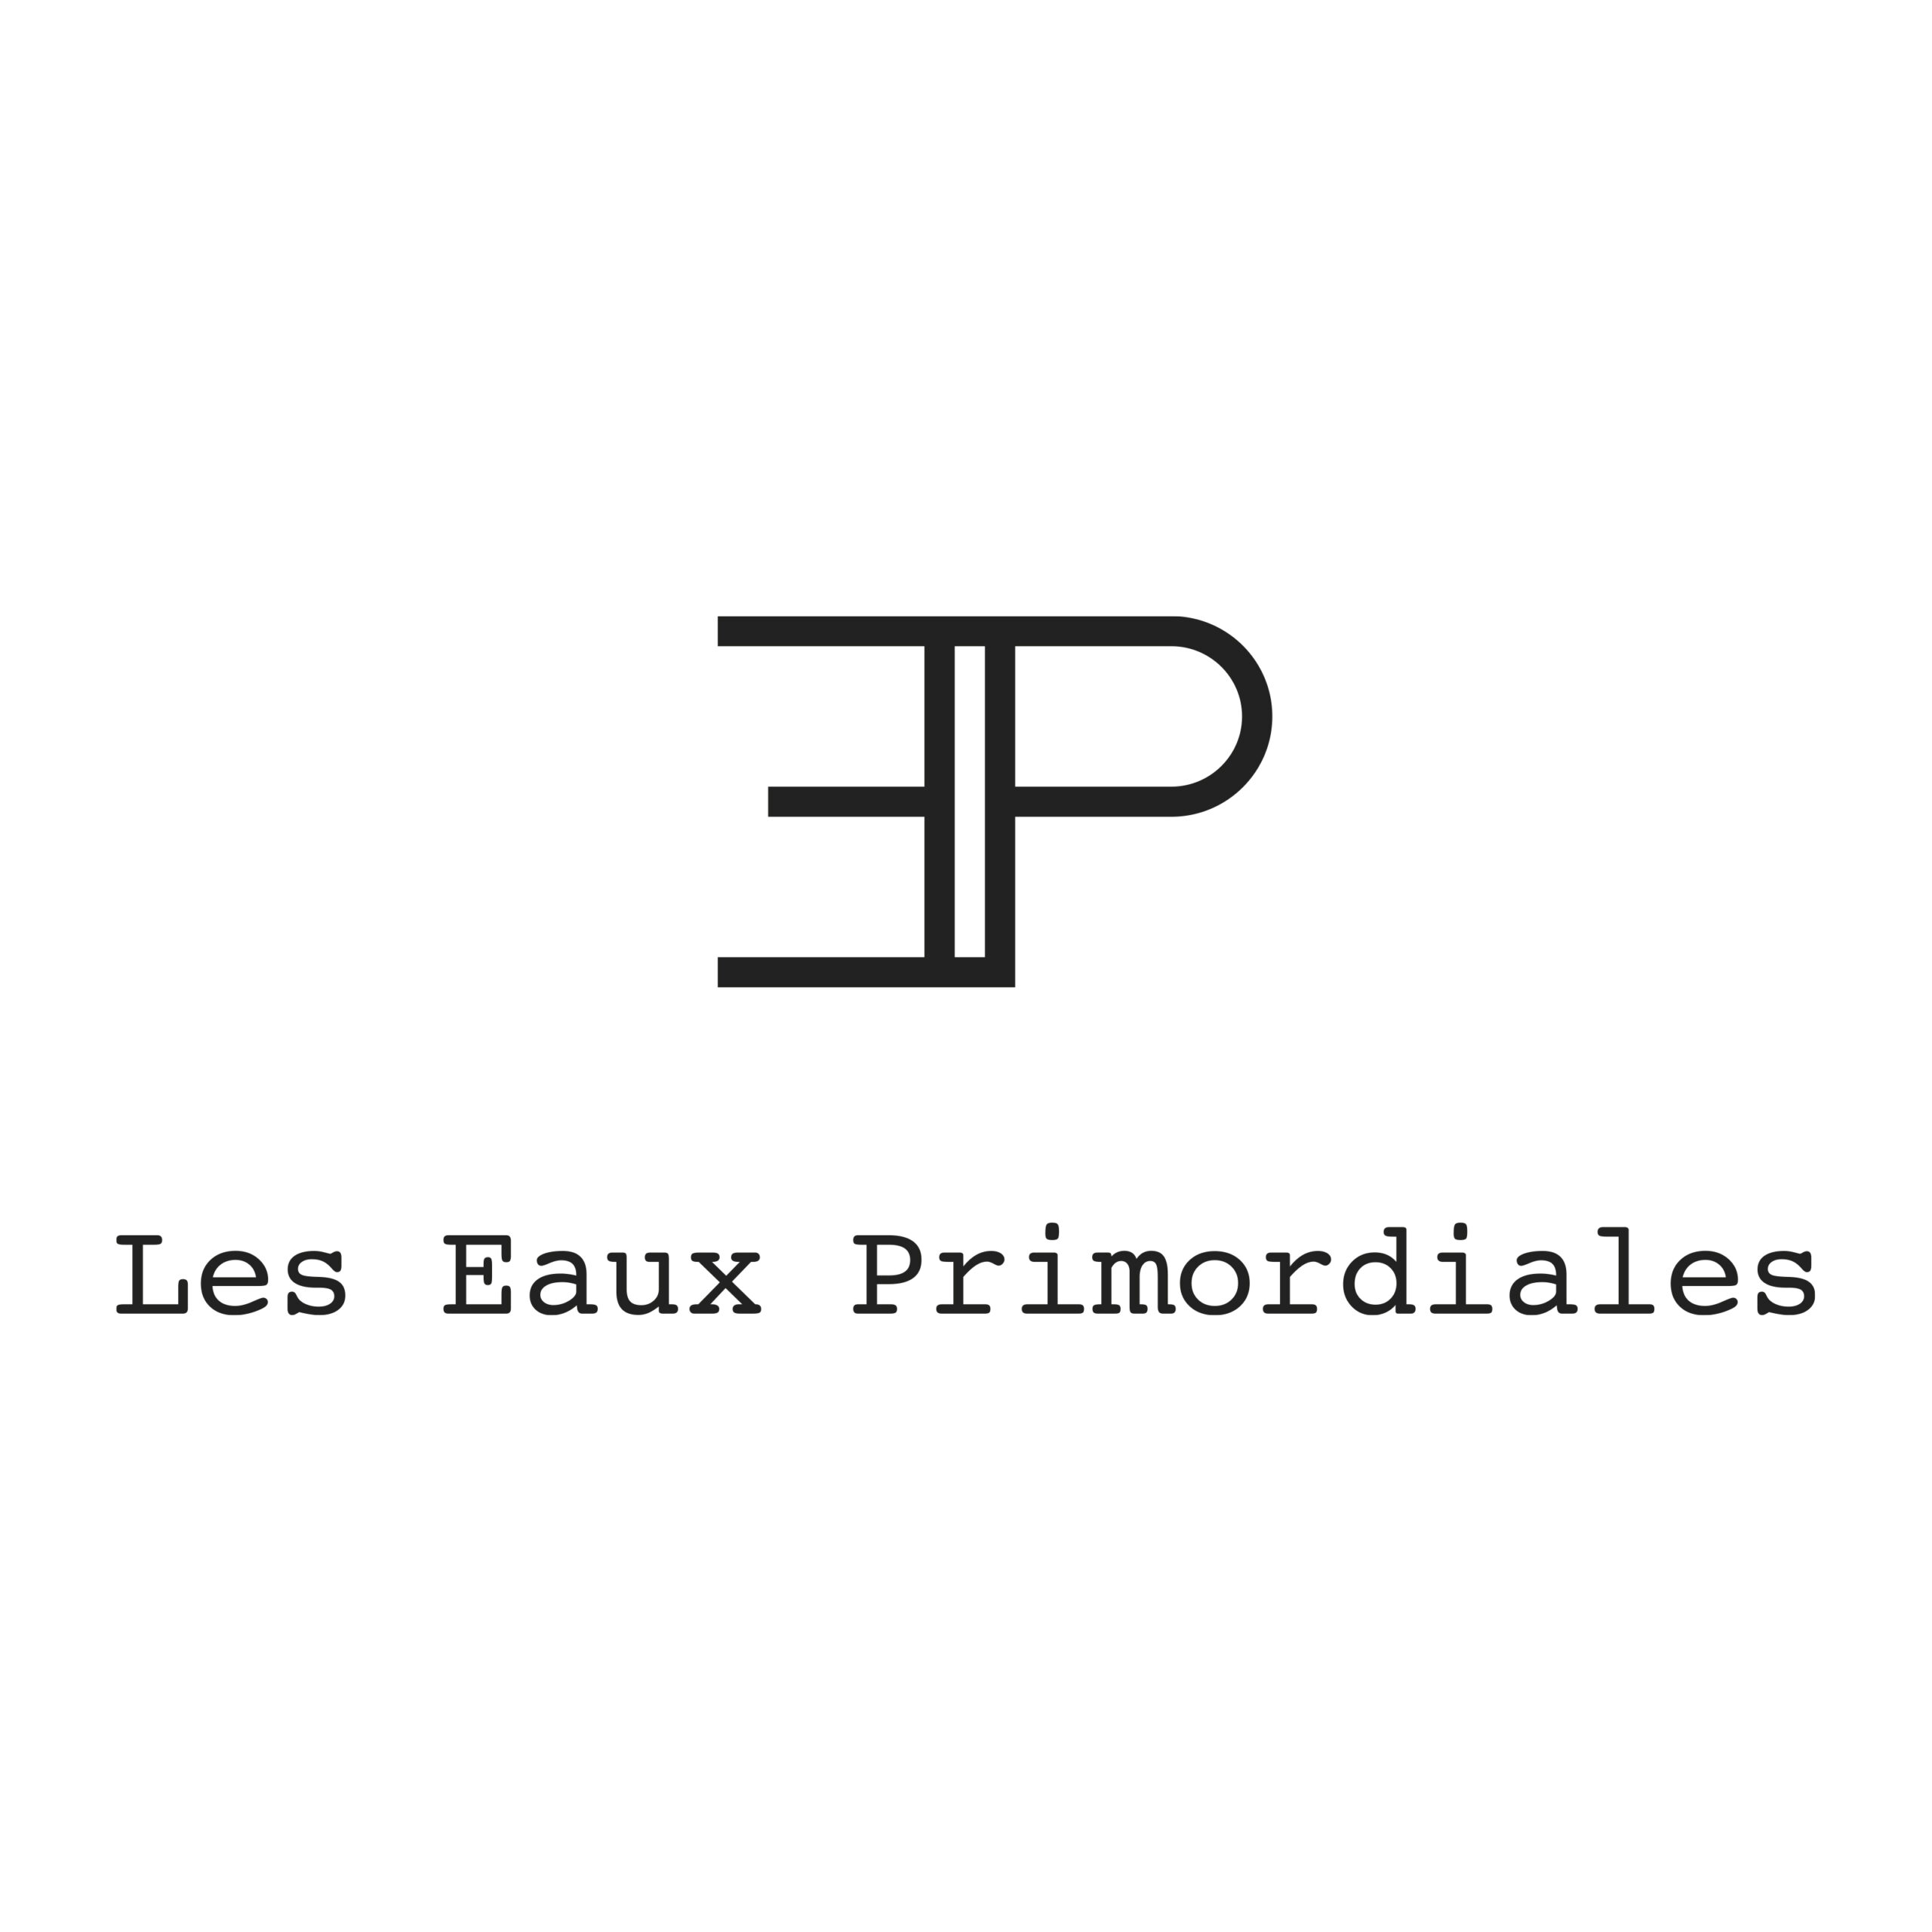 Leas Eaux Primordiales Logo